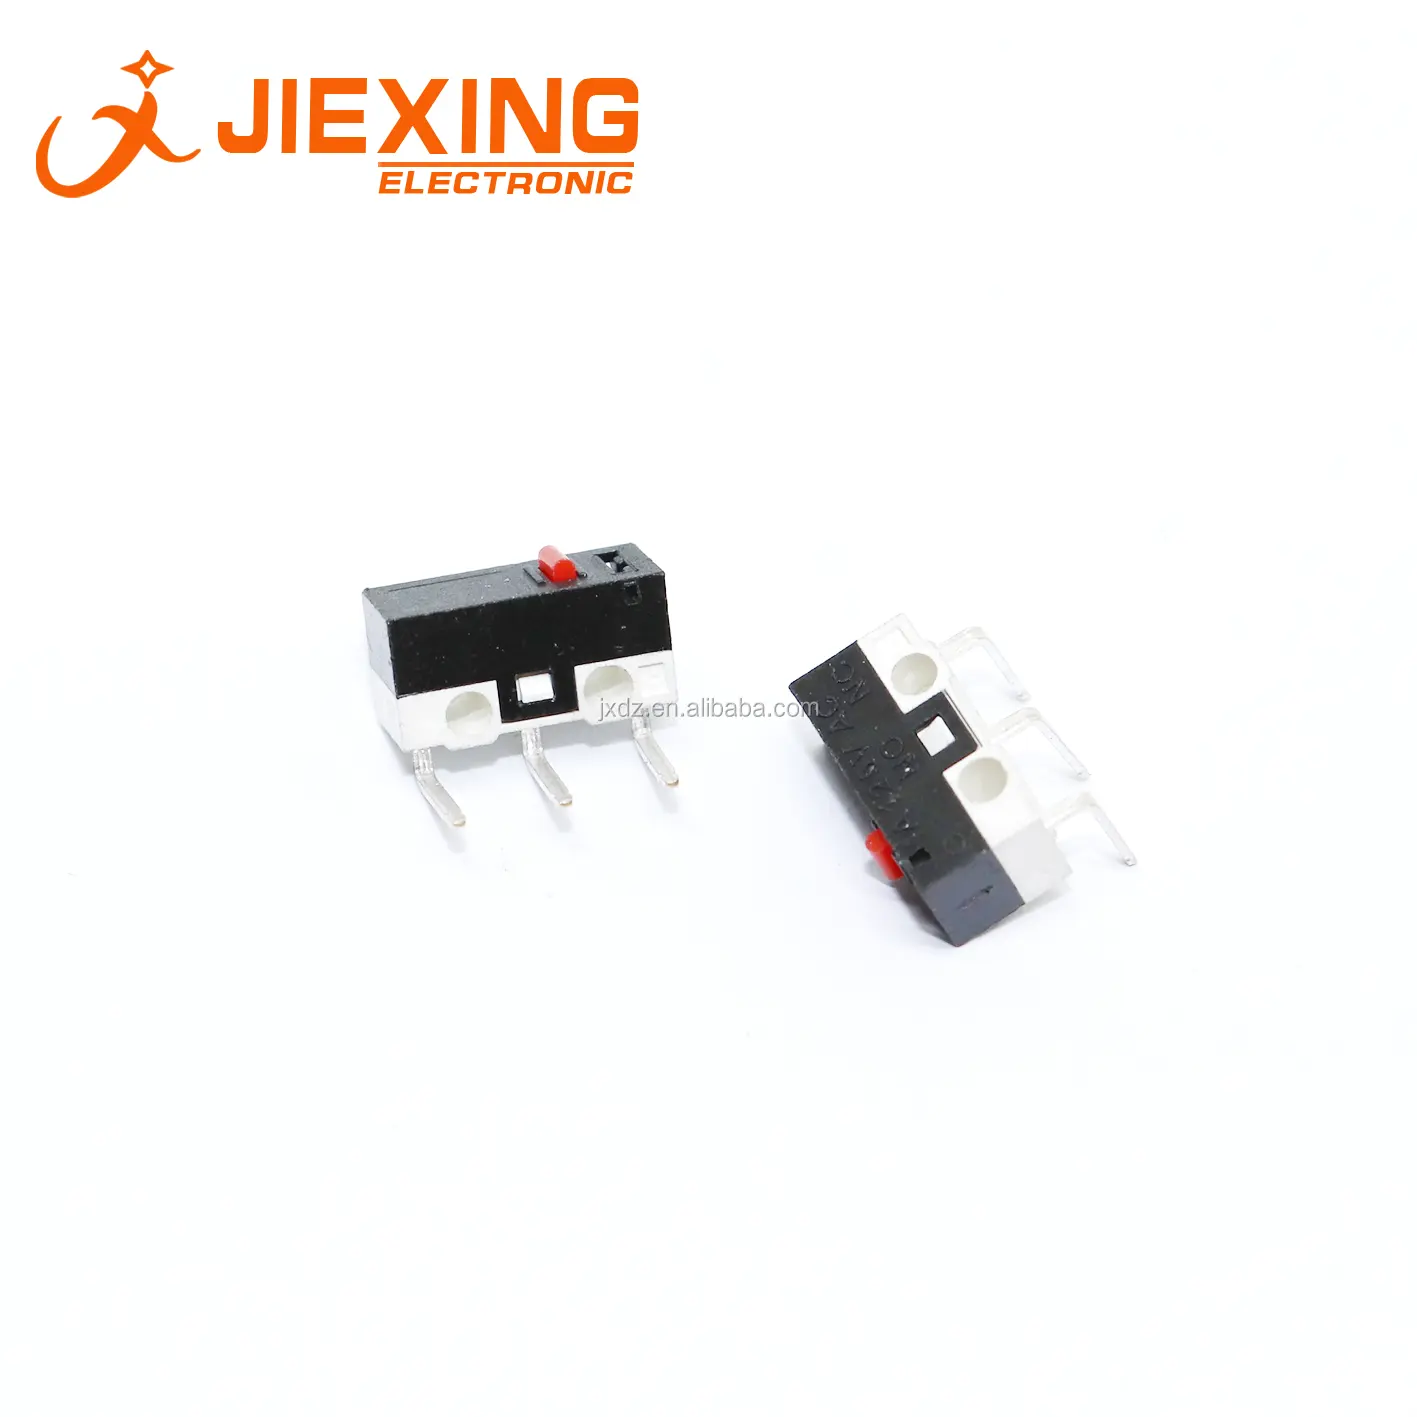 ขนาดเล็ก Micro Switch 3pin Bent pin 1A 125V ขนาดเล็กปุ่มสวิทช์สำหรับแผ่น PCB Mount